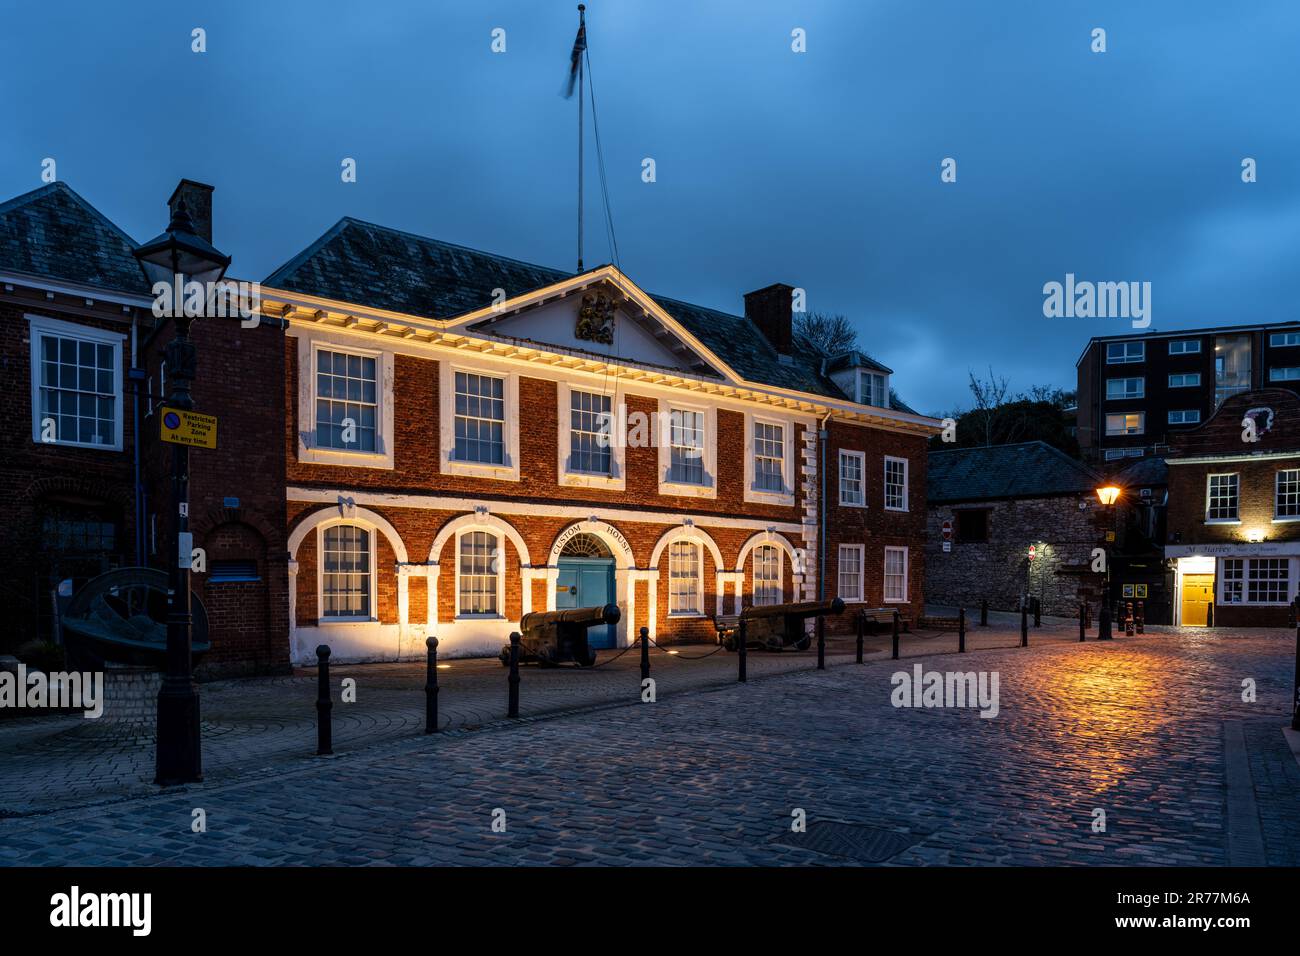 La storica Custom House di Exeter è illuminata di notte sul molo. Foto Stock